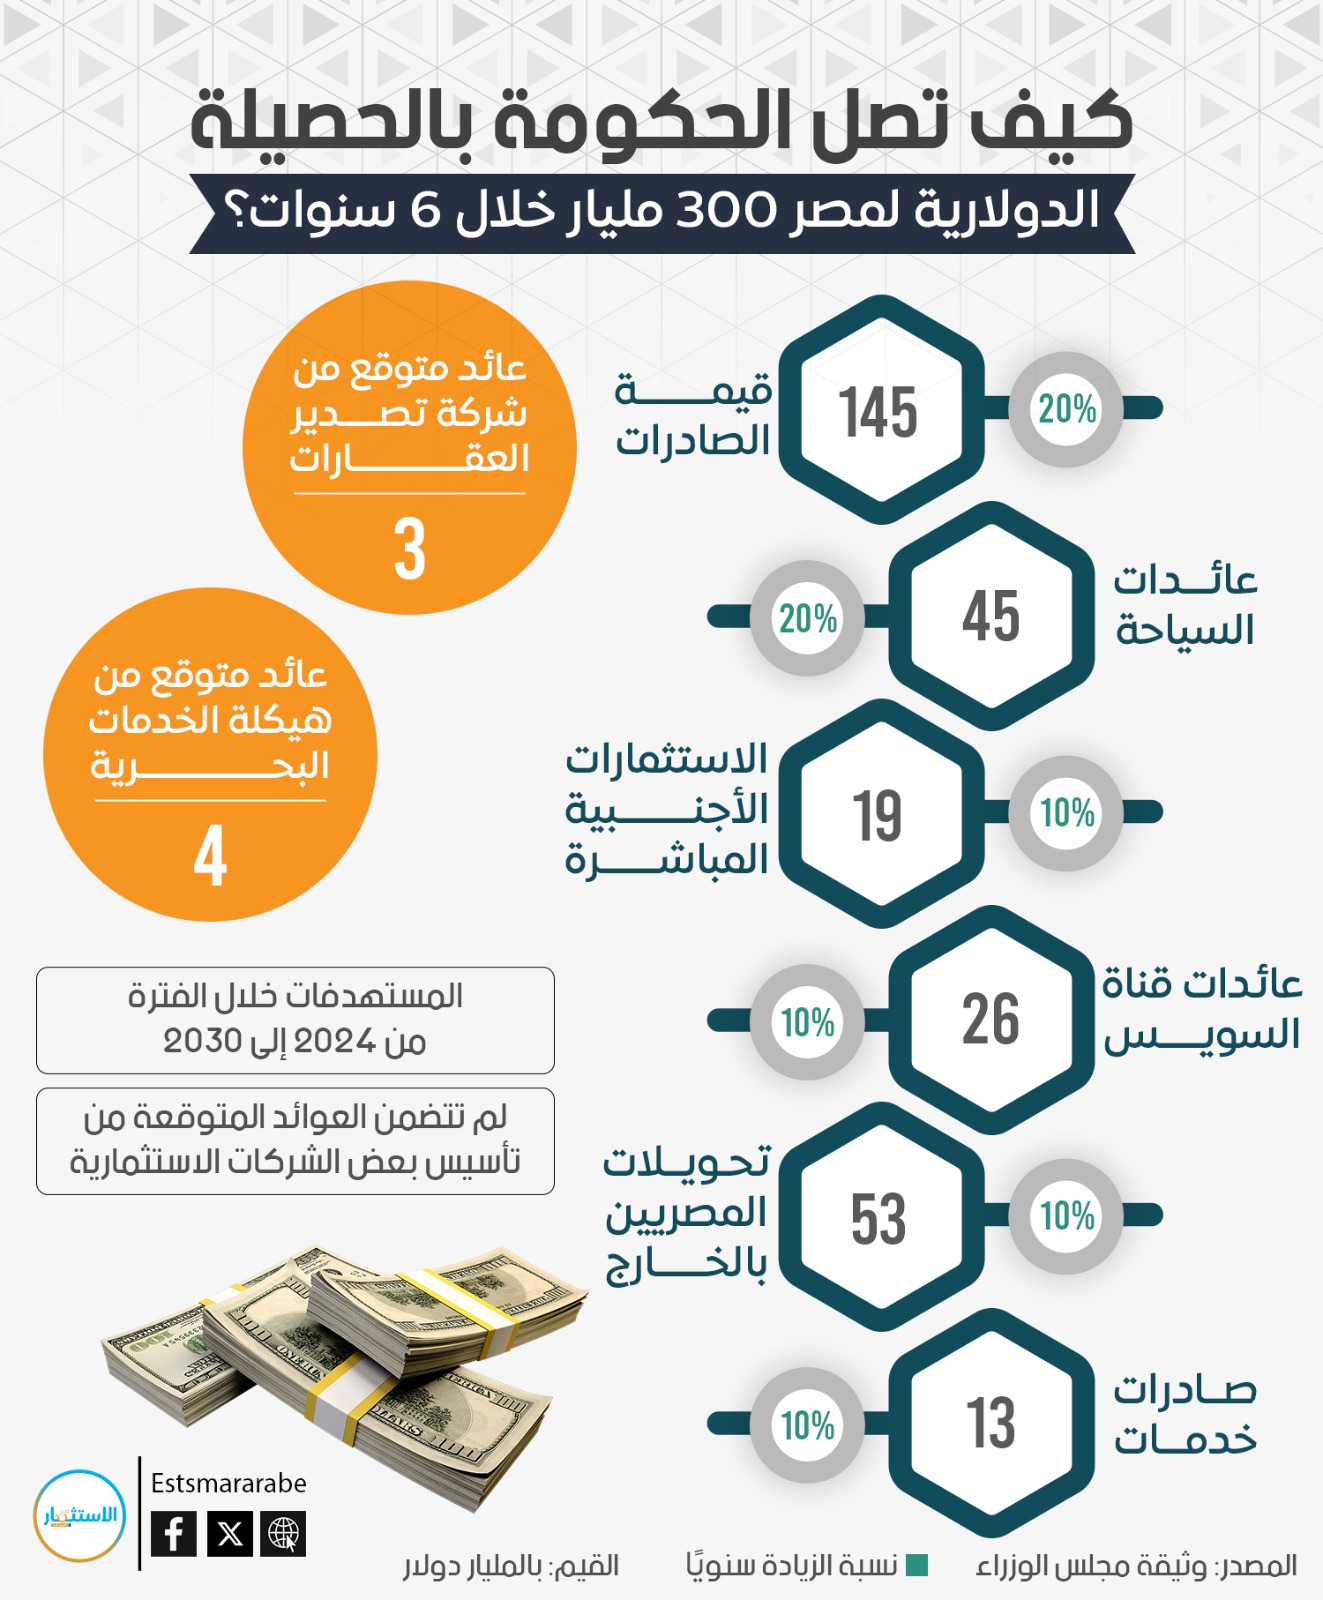 أنفوجرافيك|| كيف تجمع مصر 300 مليار دولار فى 6سنوات؟